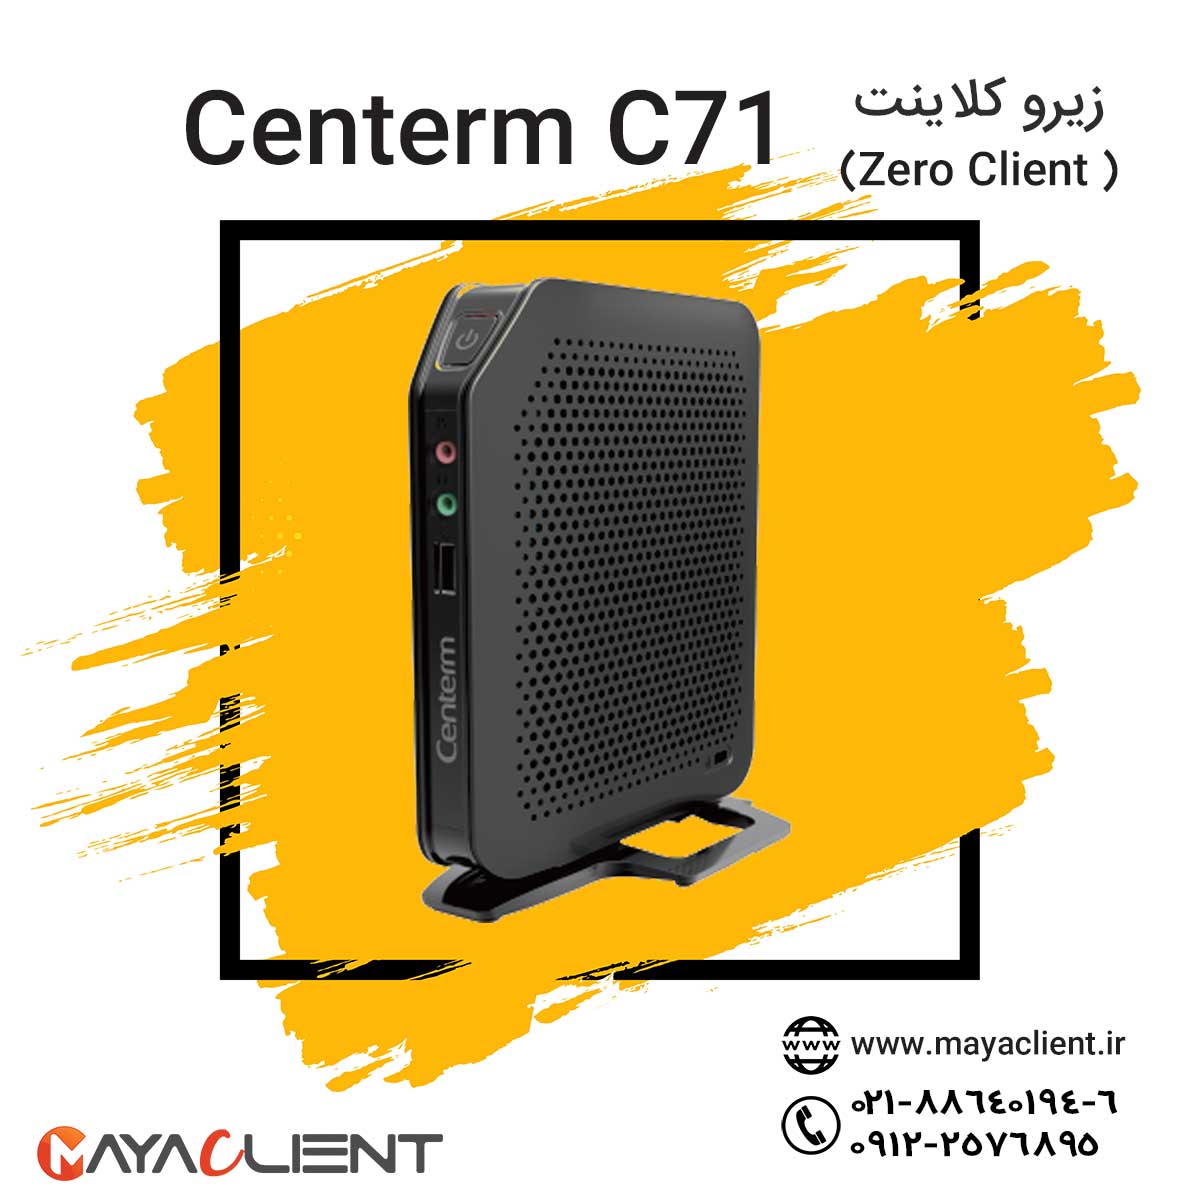 centerm c71 pcoip zero client